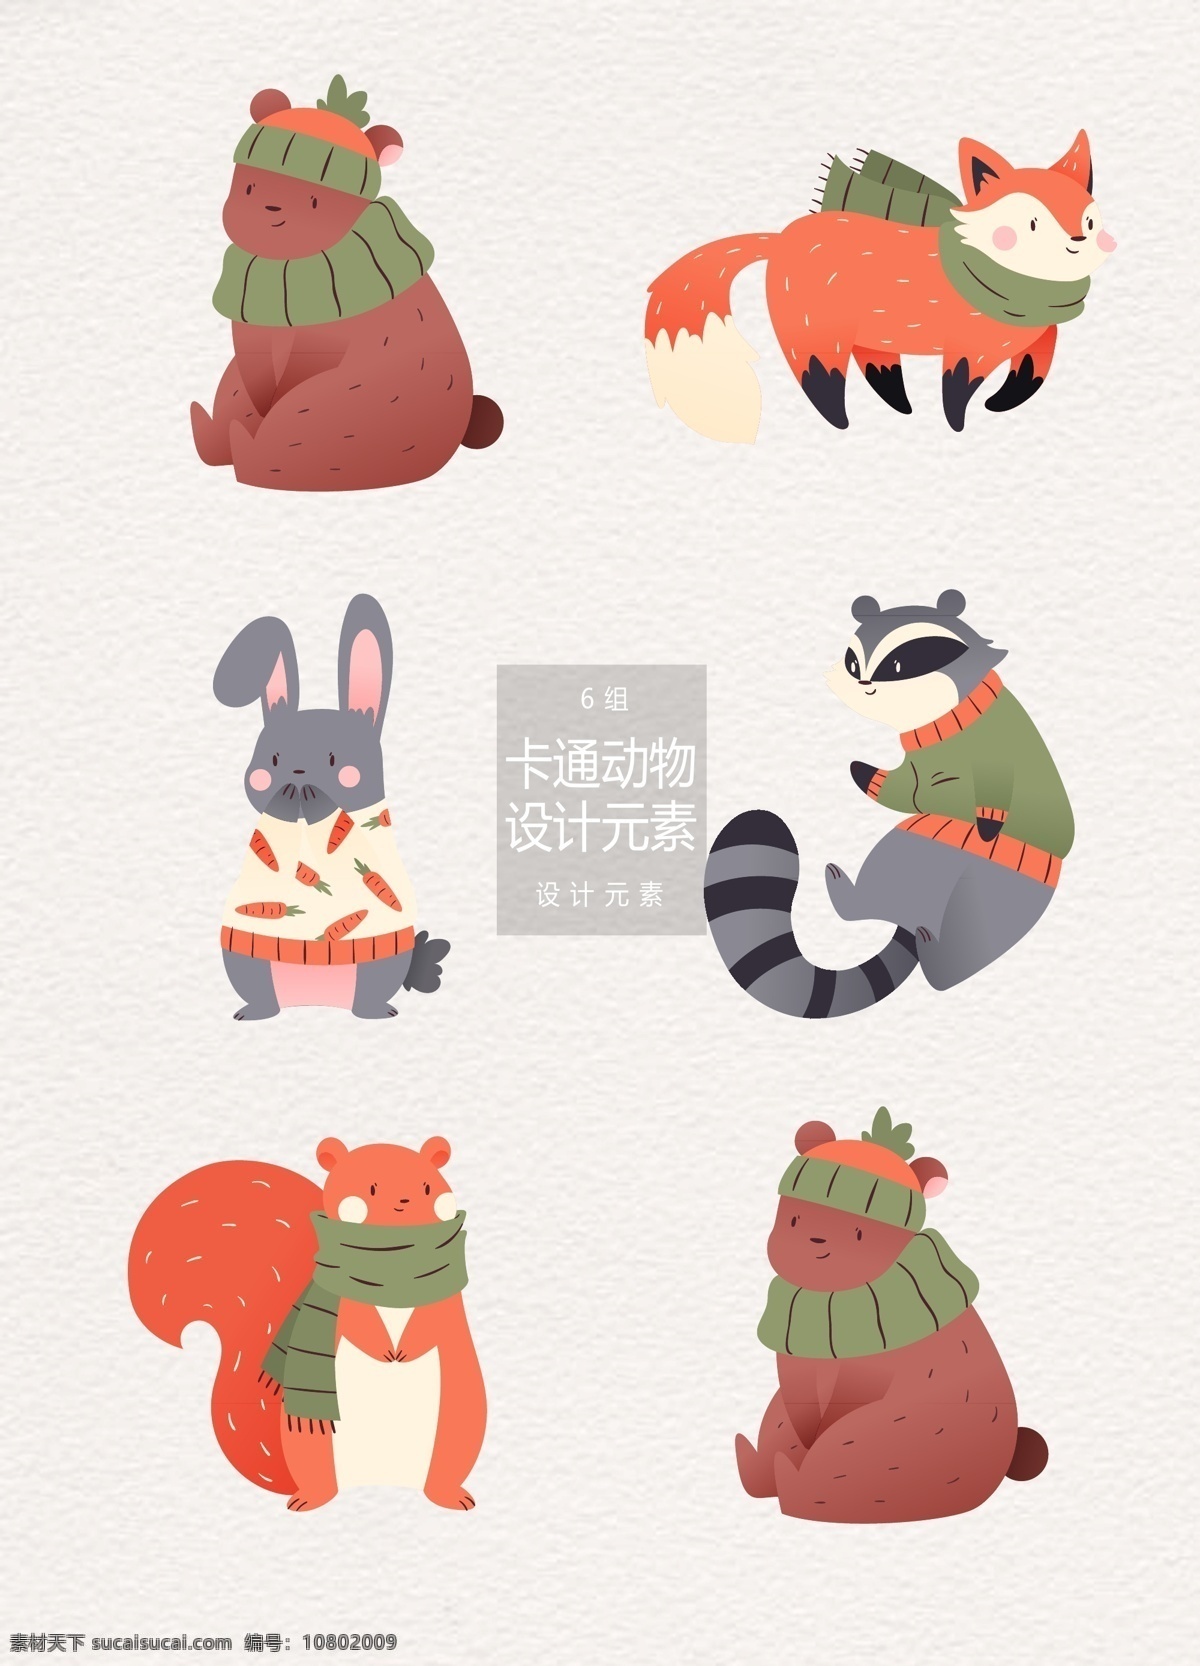 冬季 冬天 卡通 动物 元素 卡通动物 可爱 设计元素 狗熊 狐狸 兔子 松鼠